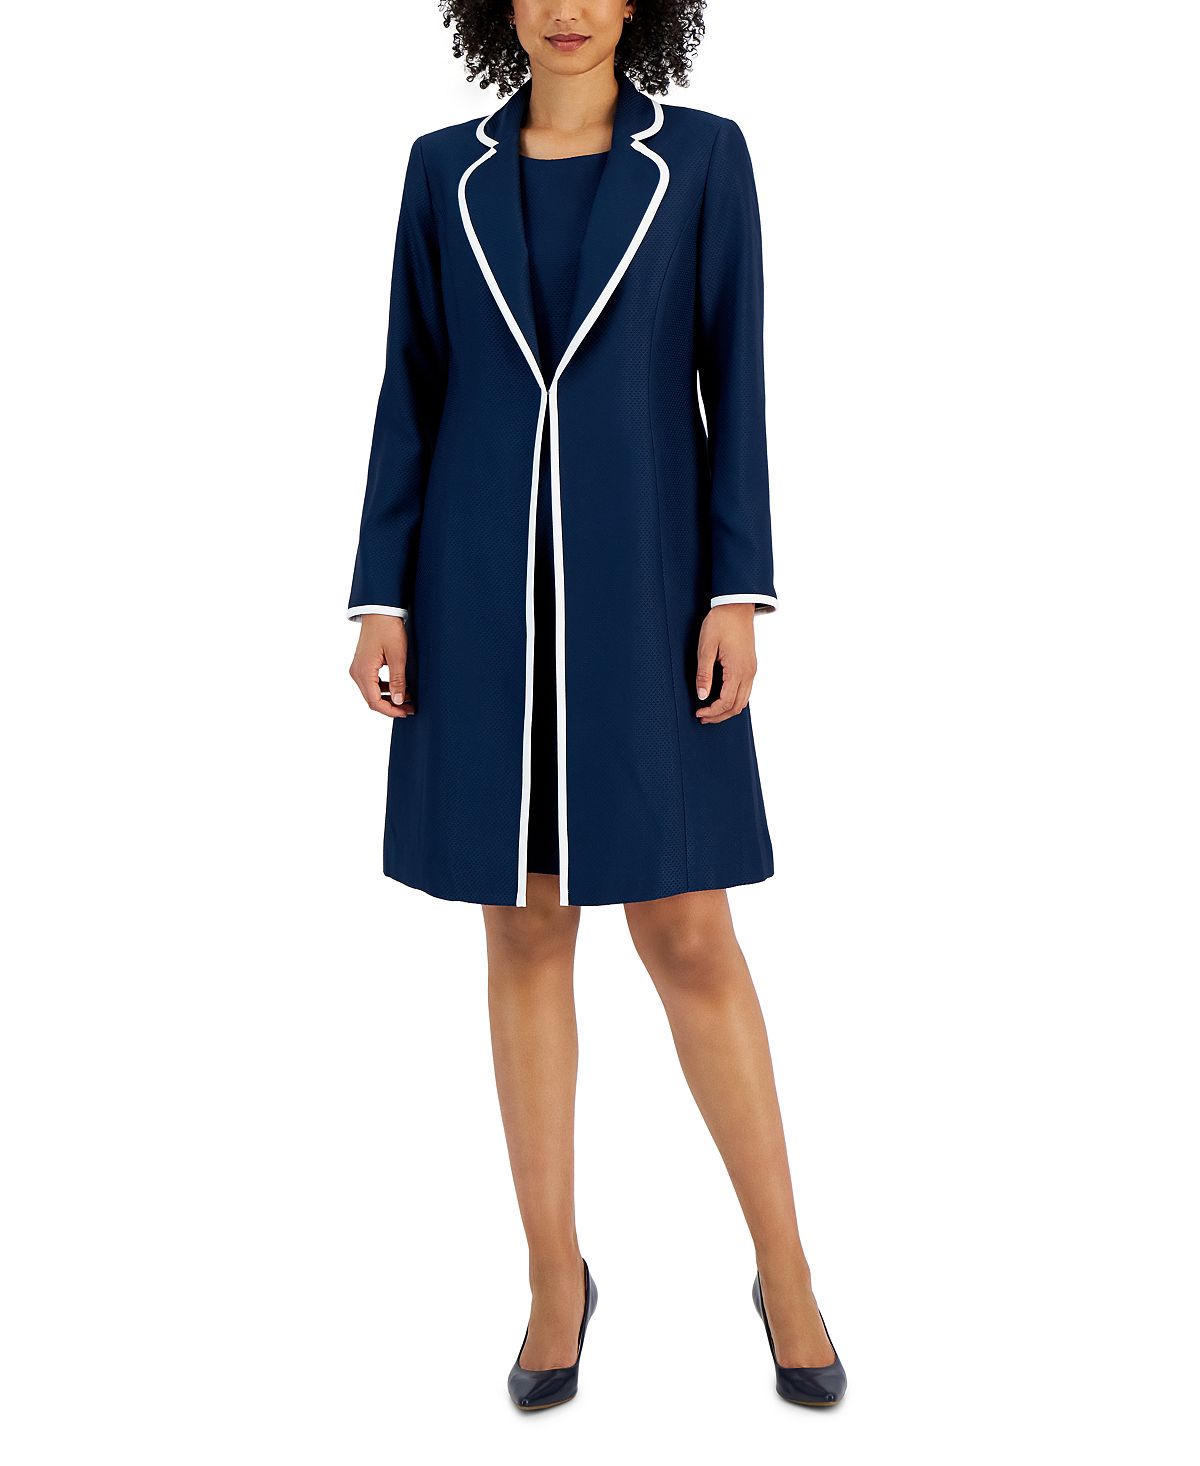 Платье-футляр с жаккардовым каркасом, доступны стандартные и миниатюрные размеры. Le Suit